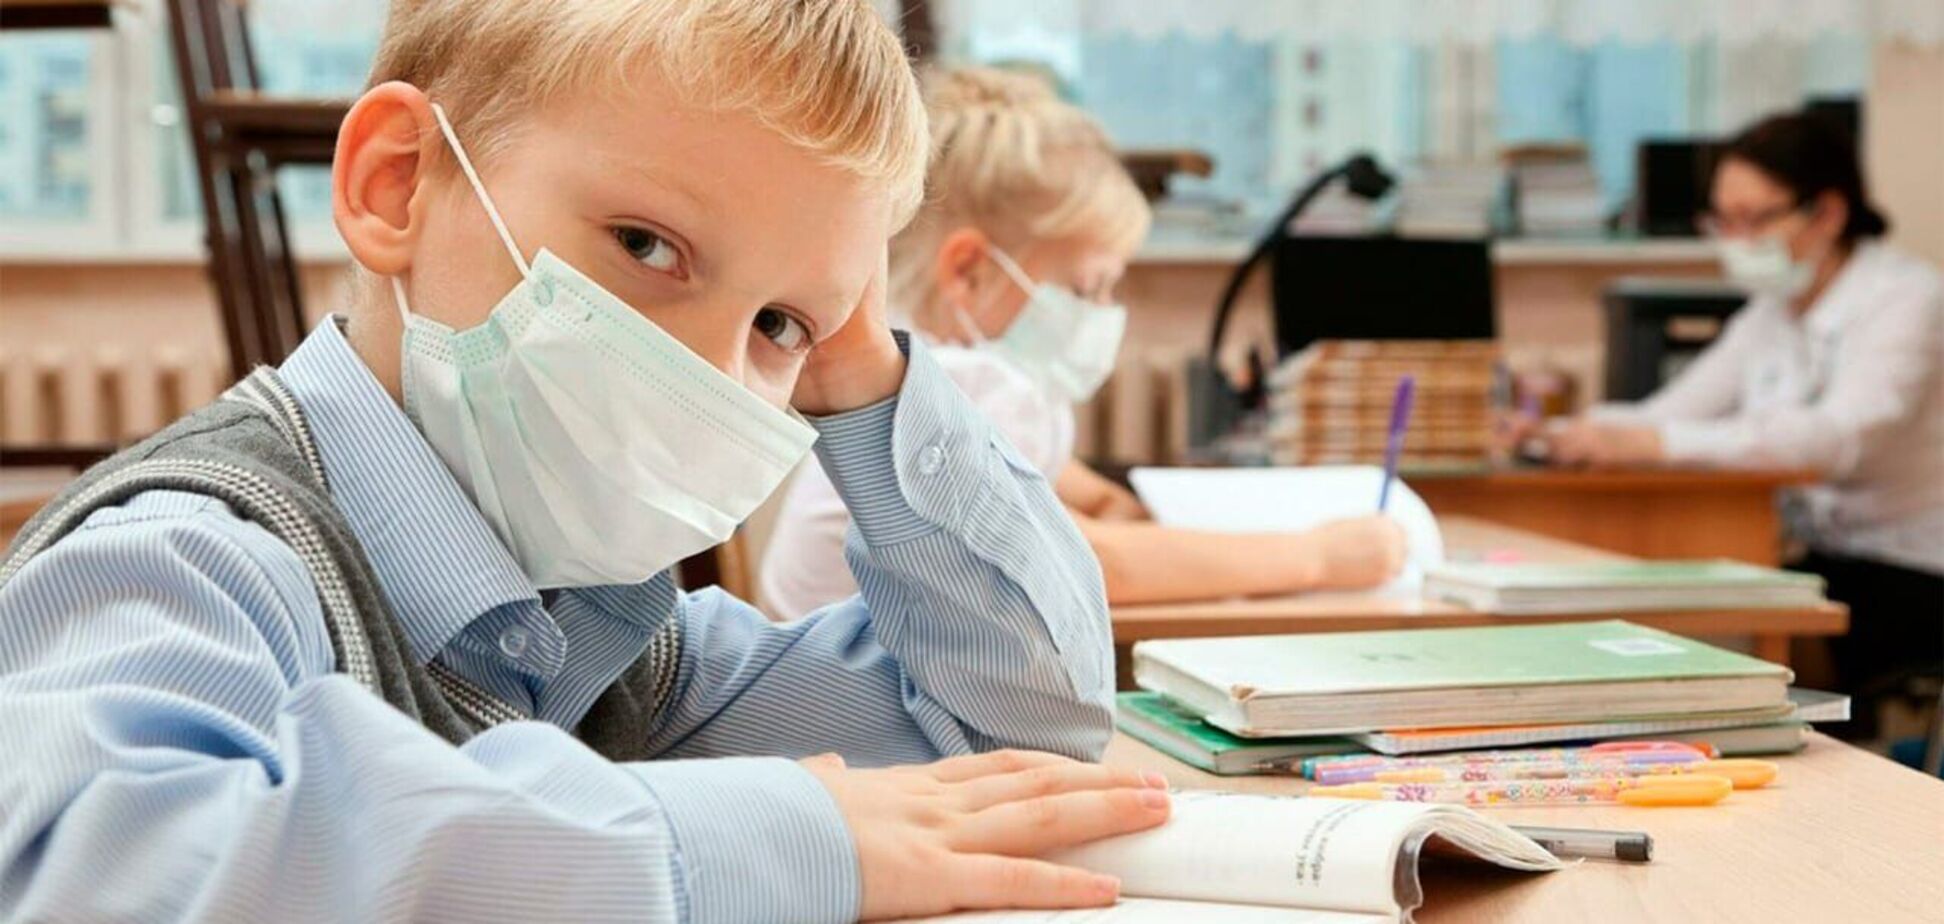 За останні тижні масово почали виявляти коронавірус у дітей шкільного віку